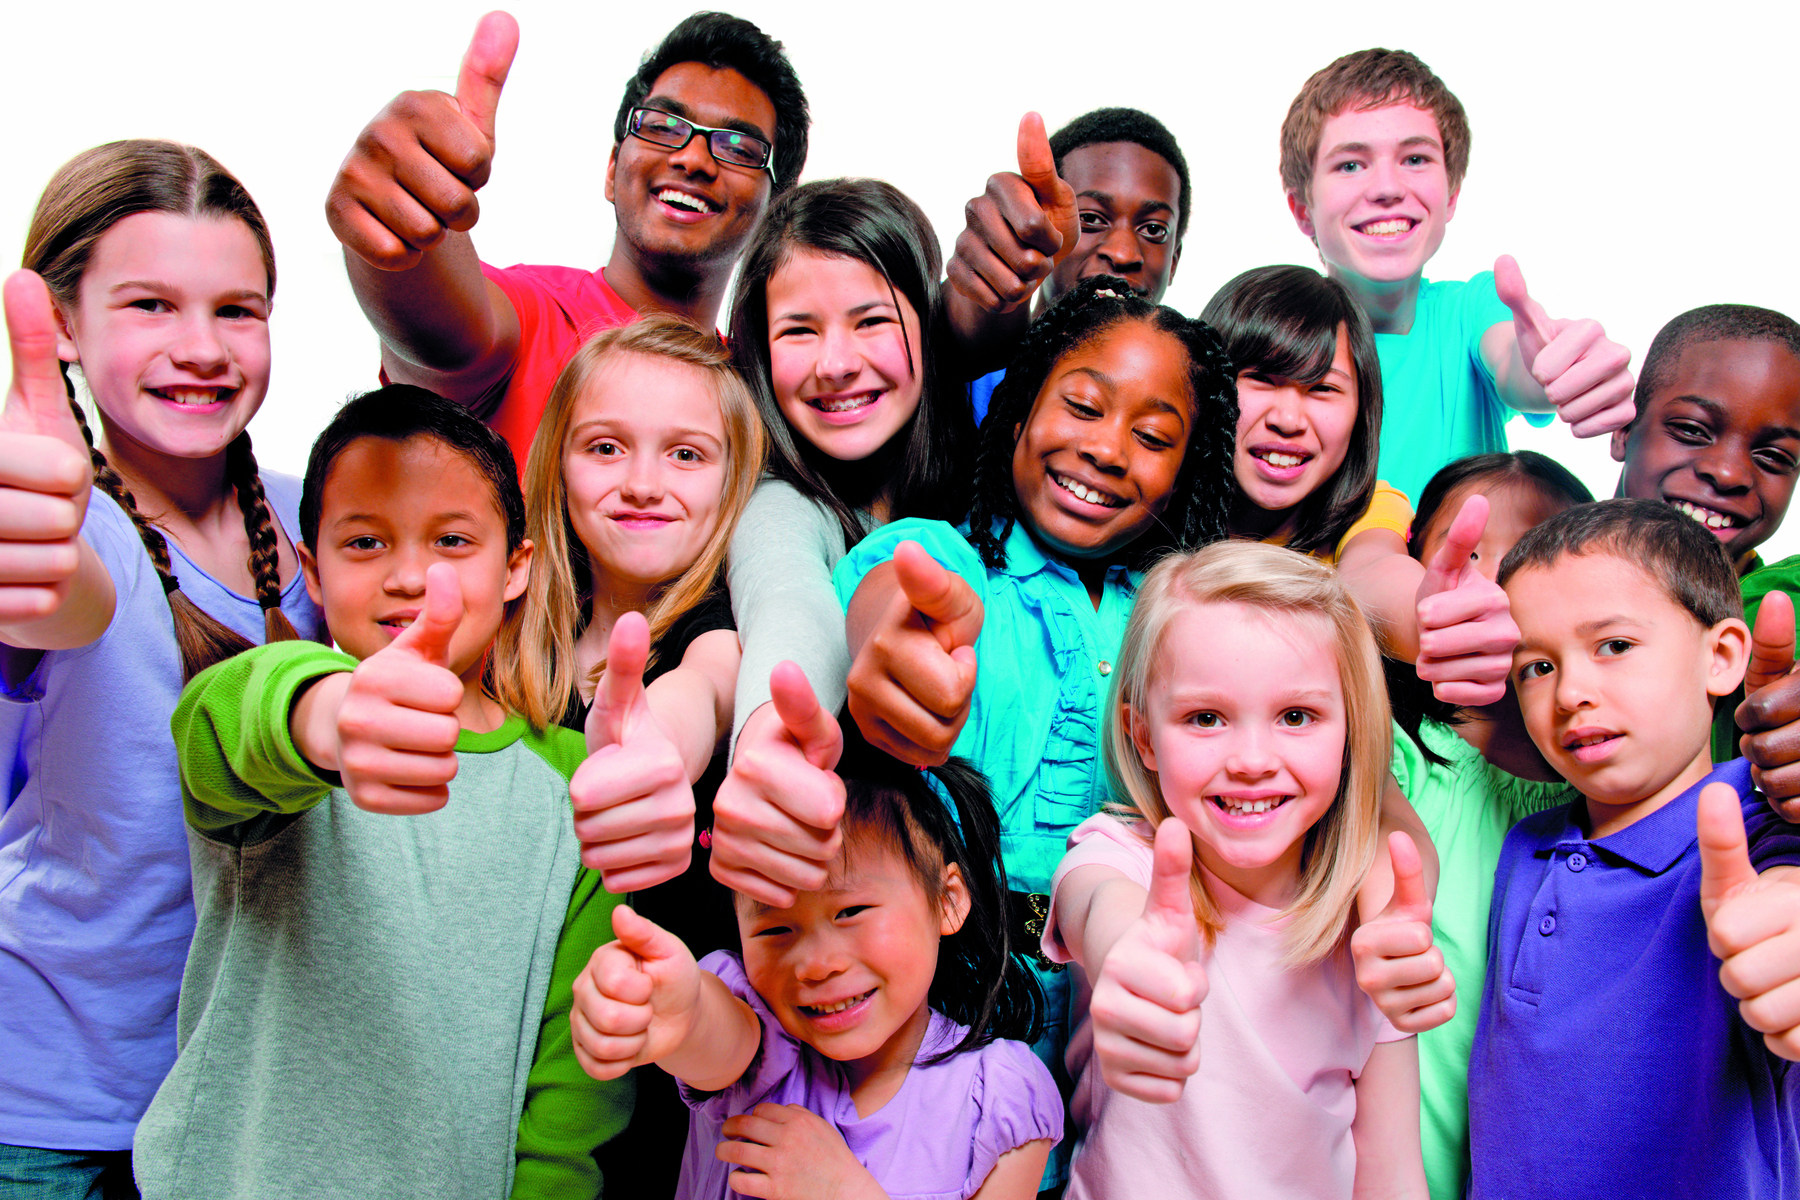 Fotografia. Diversas crianças juntas usando roupas coloridas estão sorrindo e levantando o polegar.